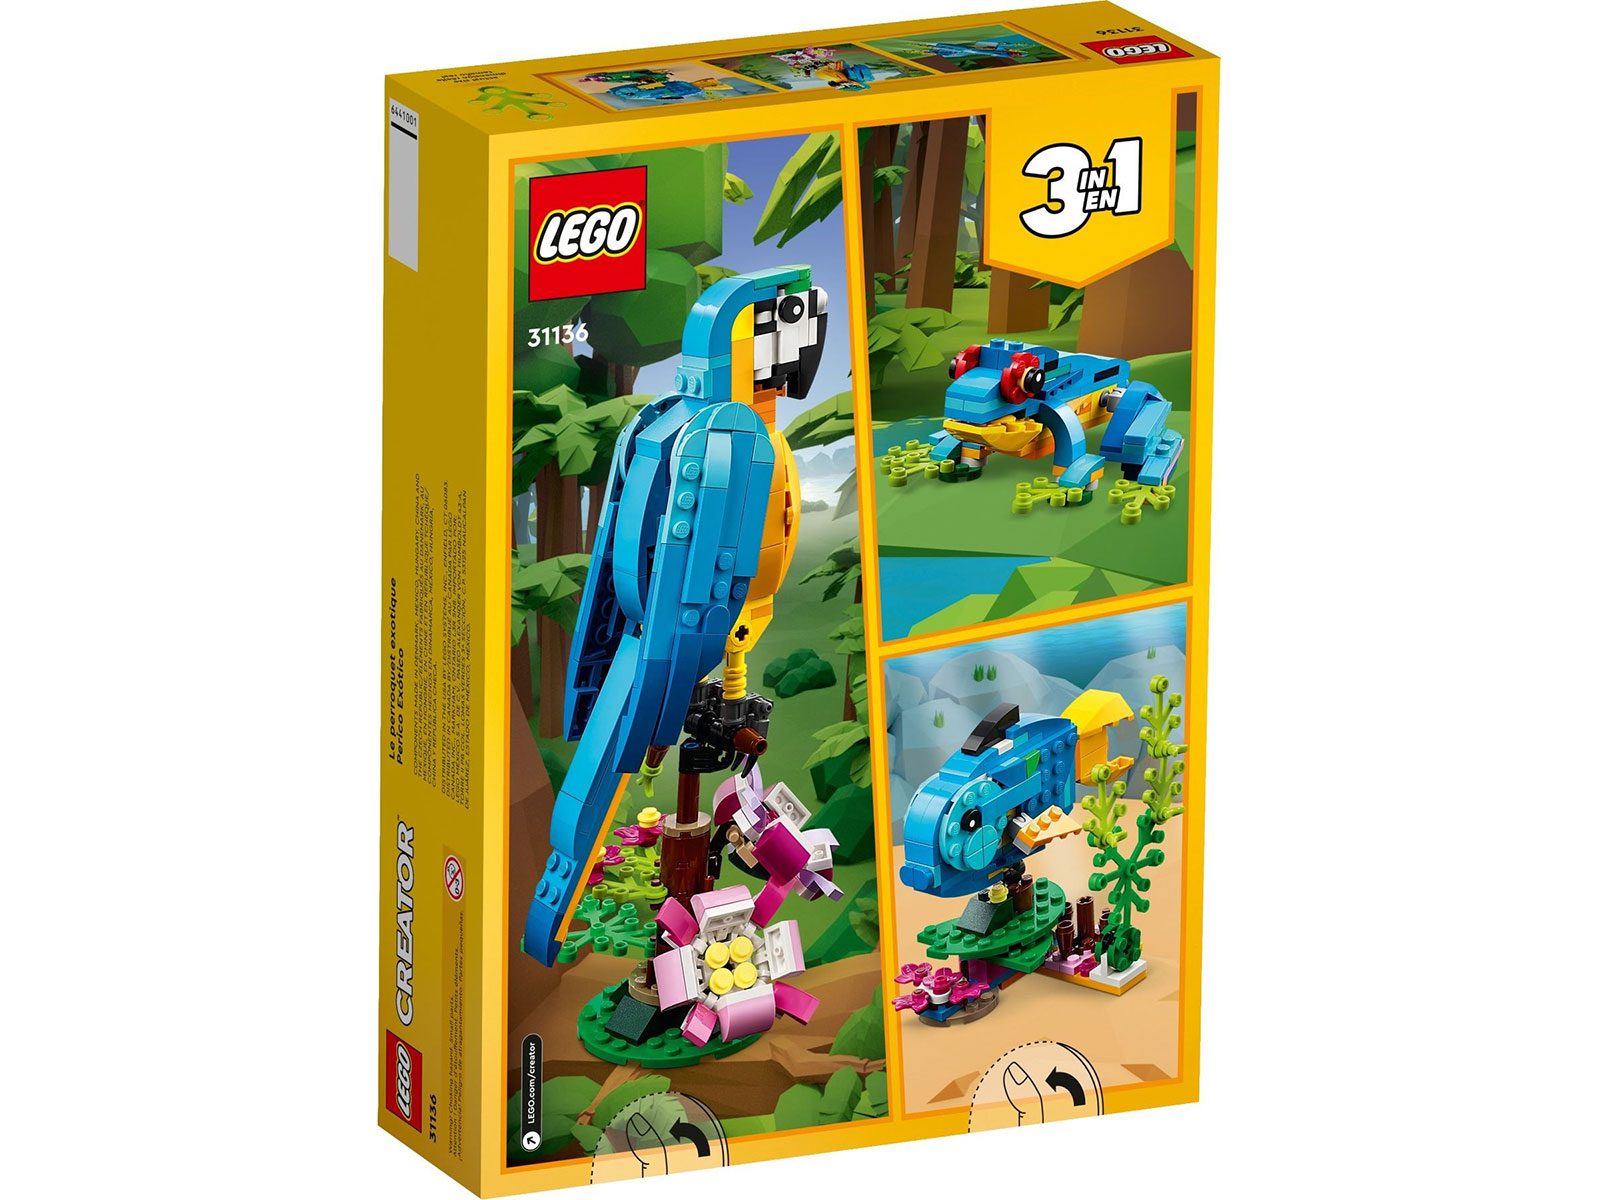 LEGO® Creator 31136 - Exotischer Papagei